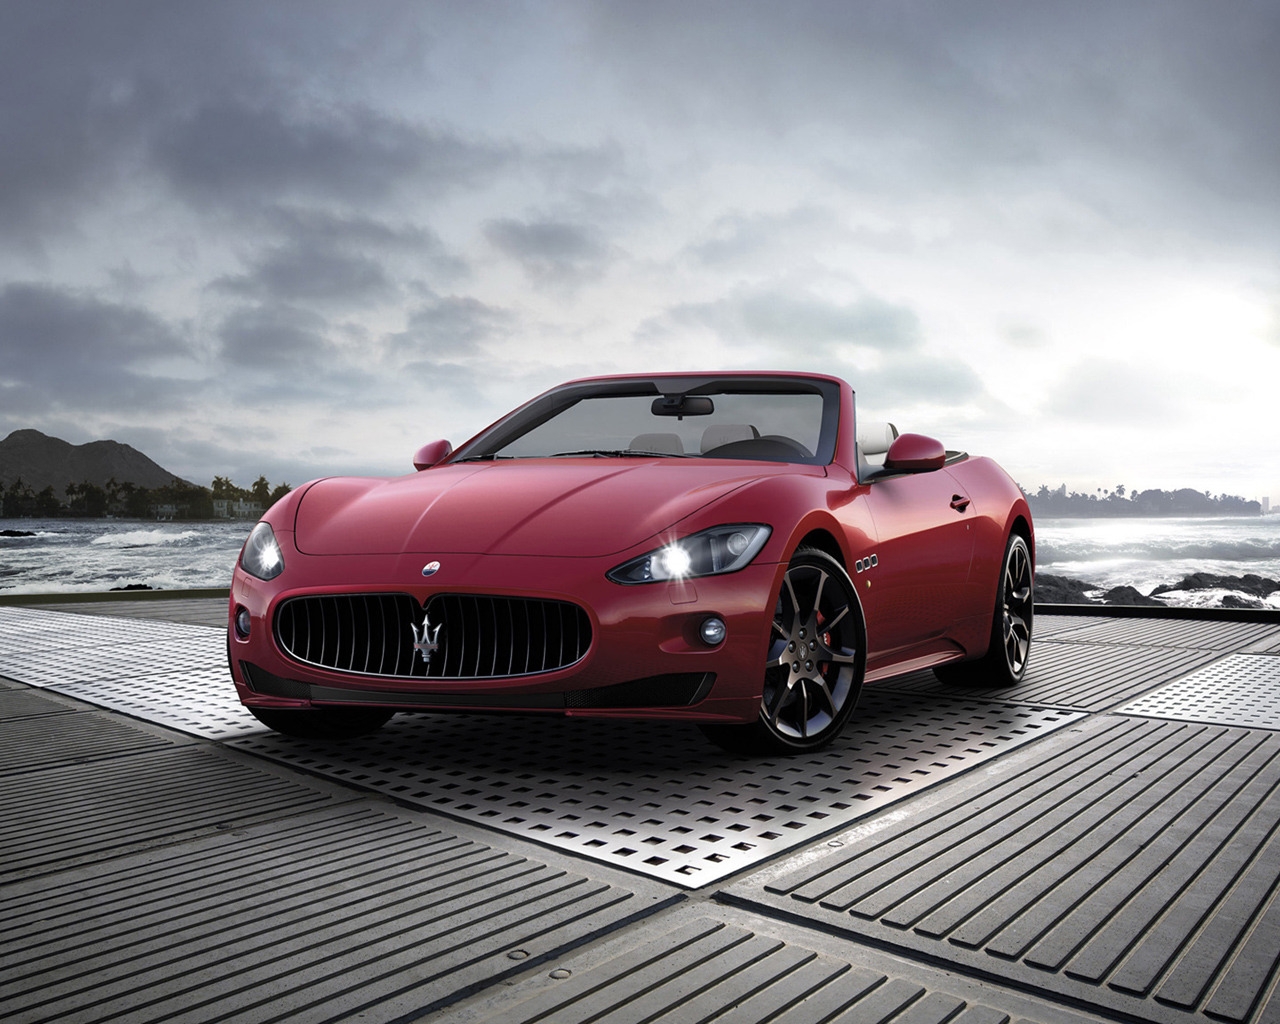 2011 Maserati GranCabrio Sport for 1280 x 1024 resolution